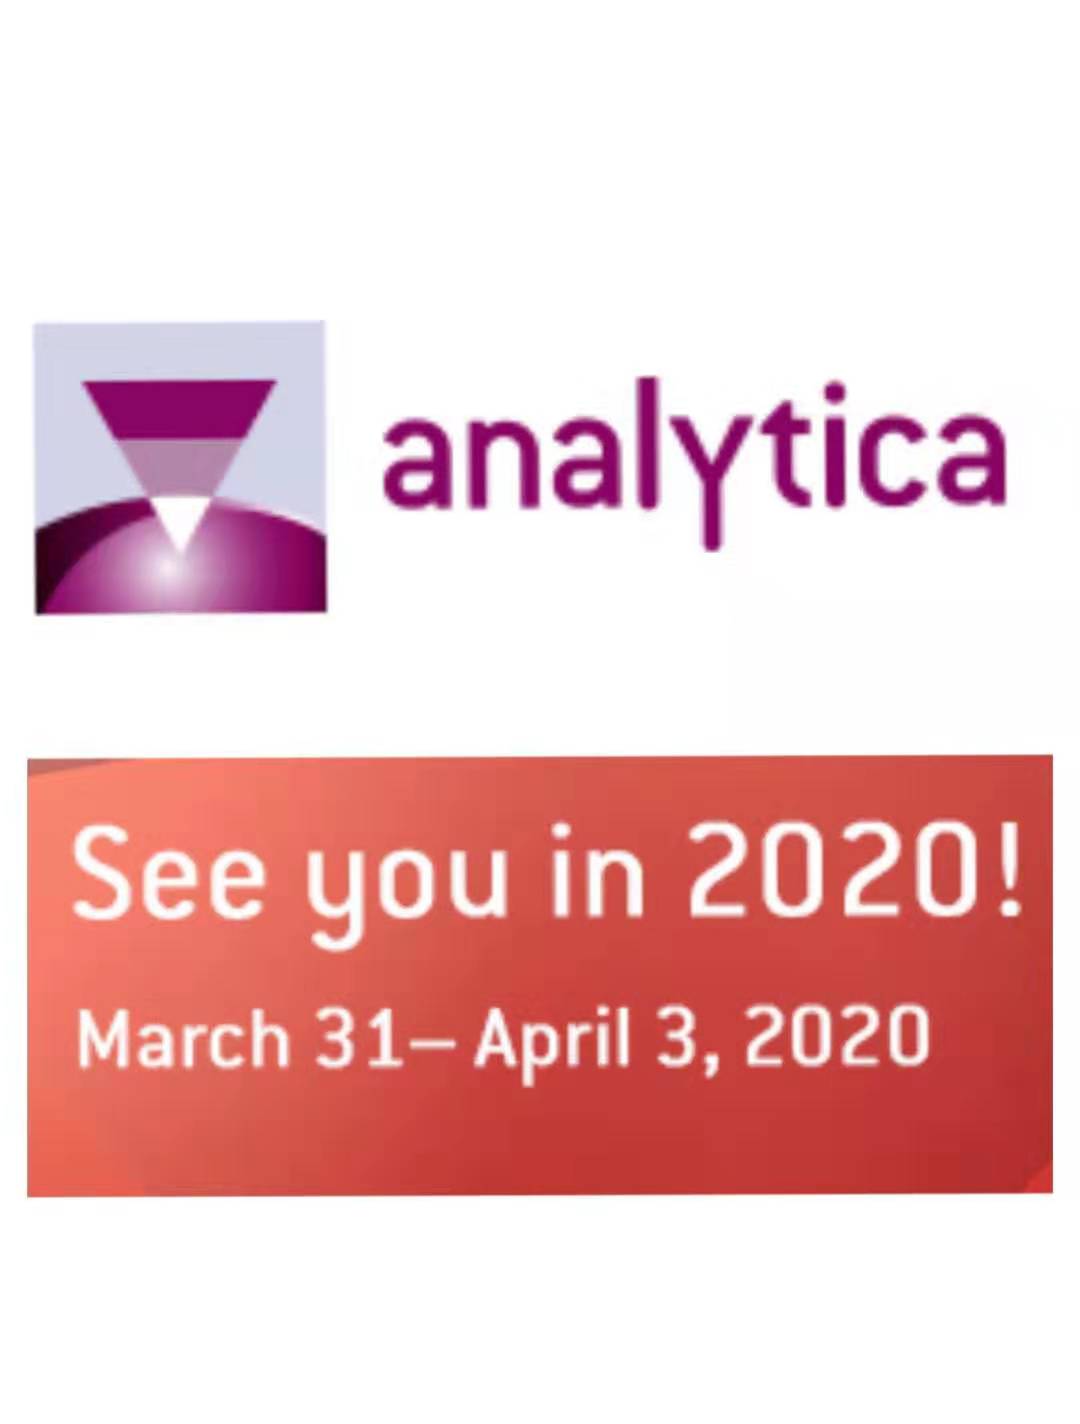 德国慕尼黑实验室展览会Analytica